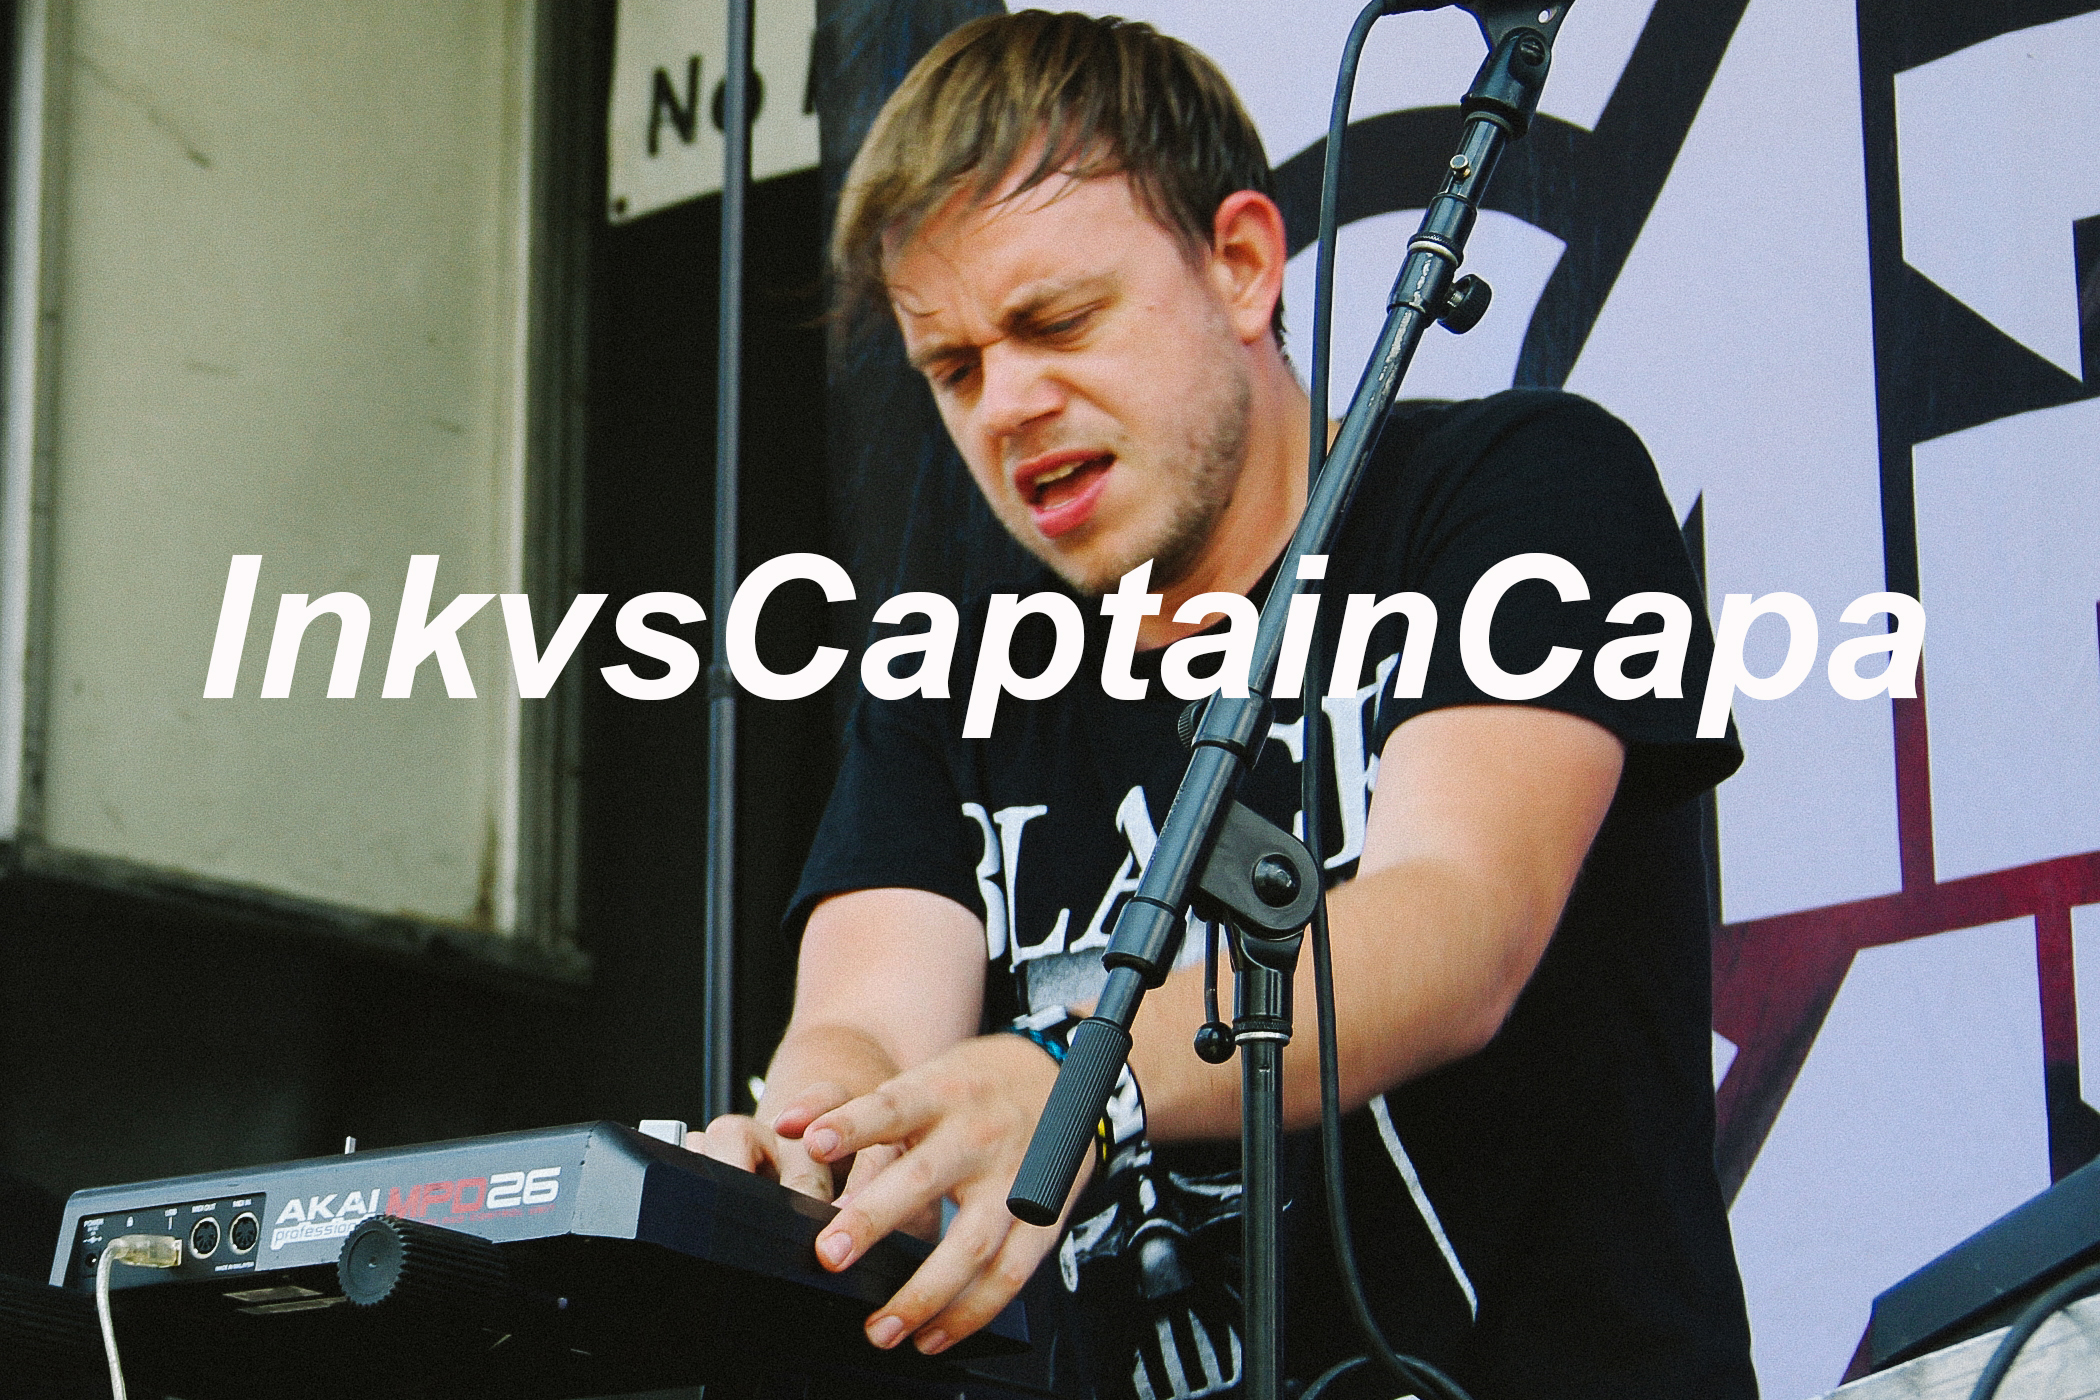 Ink vs. Captain Capa